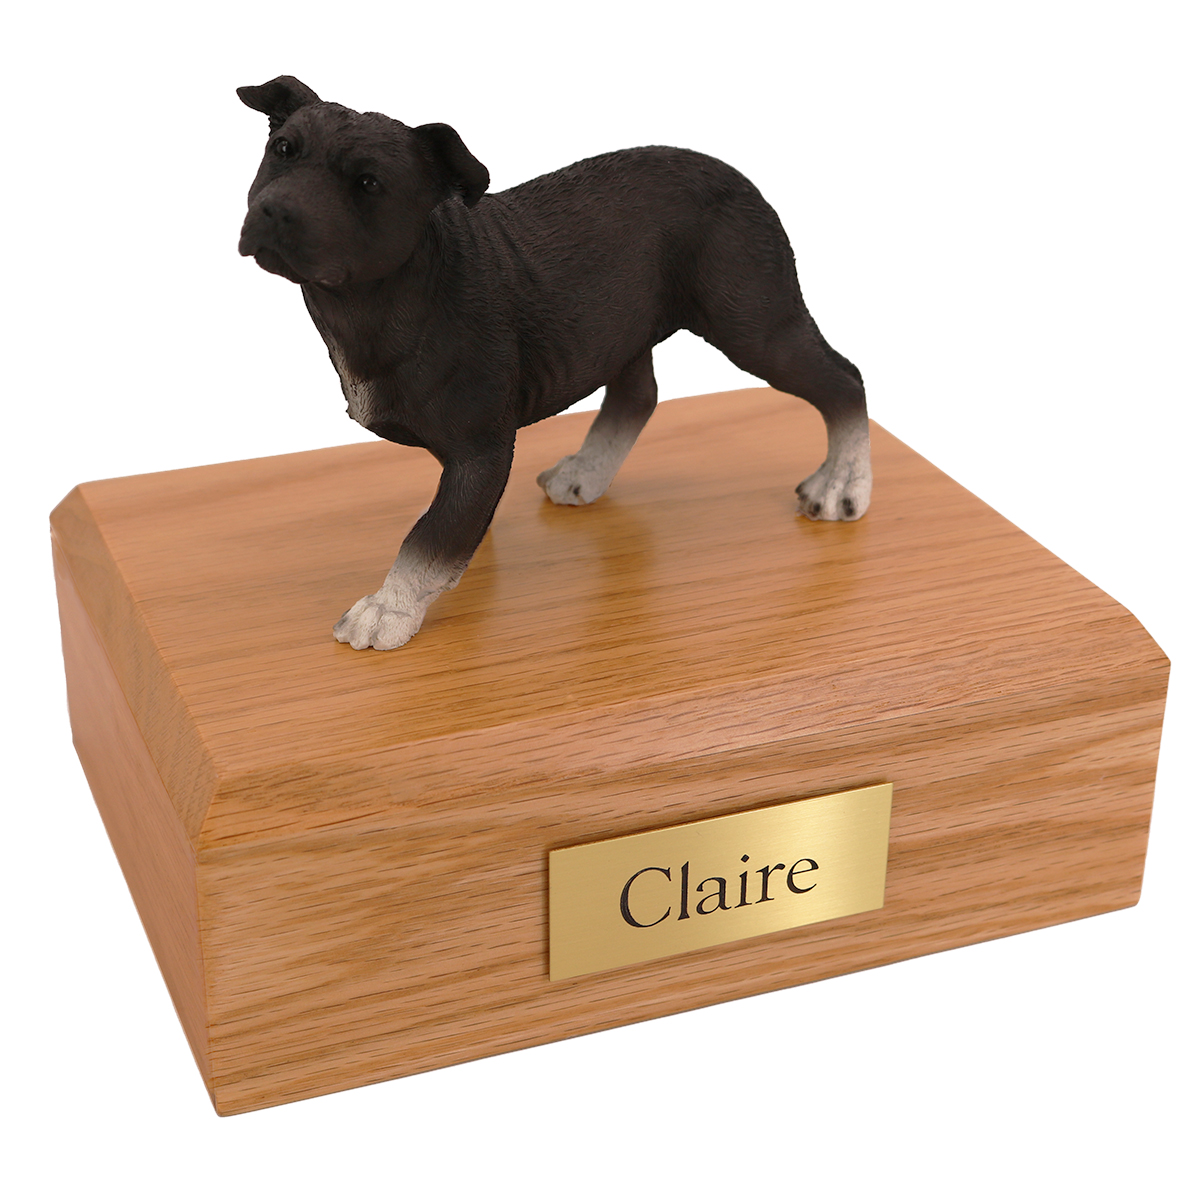 Dog, Staffordshire Terrier, Standing Black - Figurine Urn